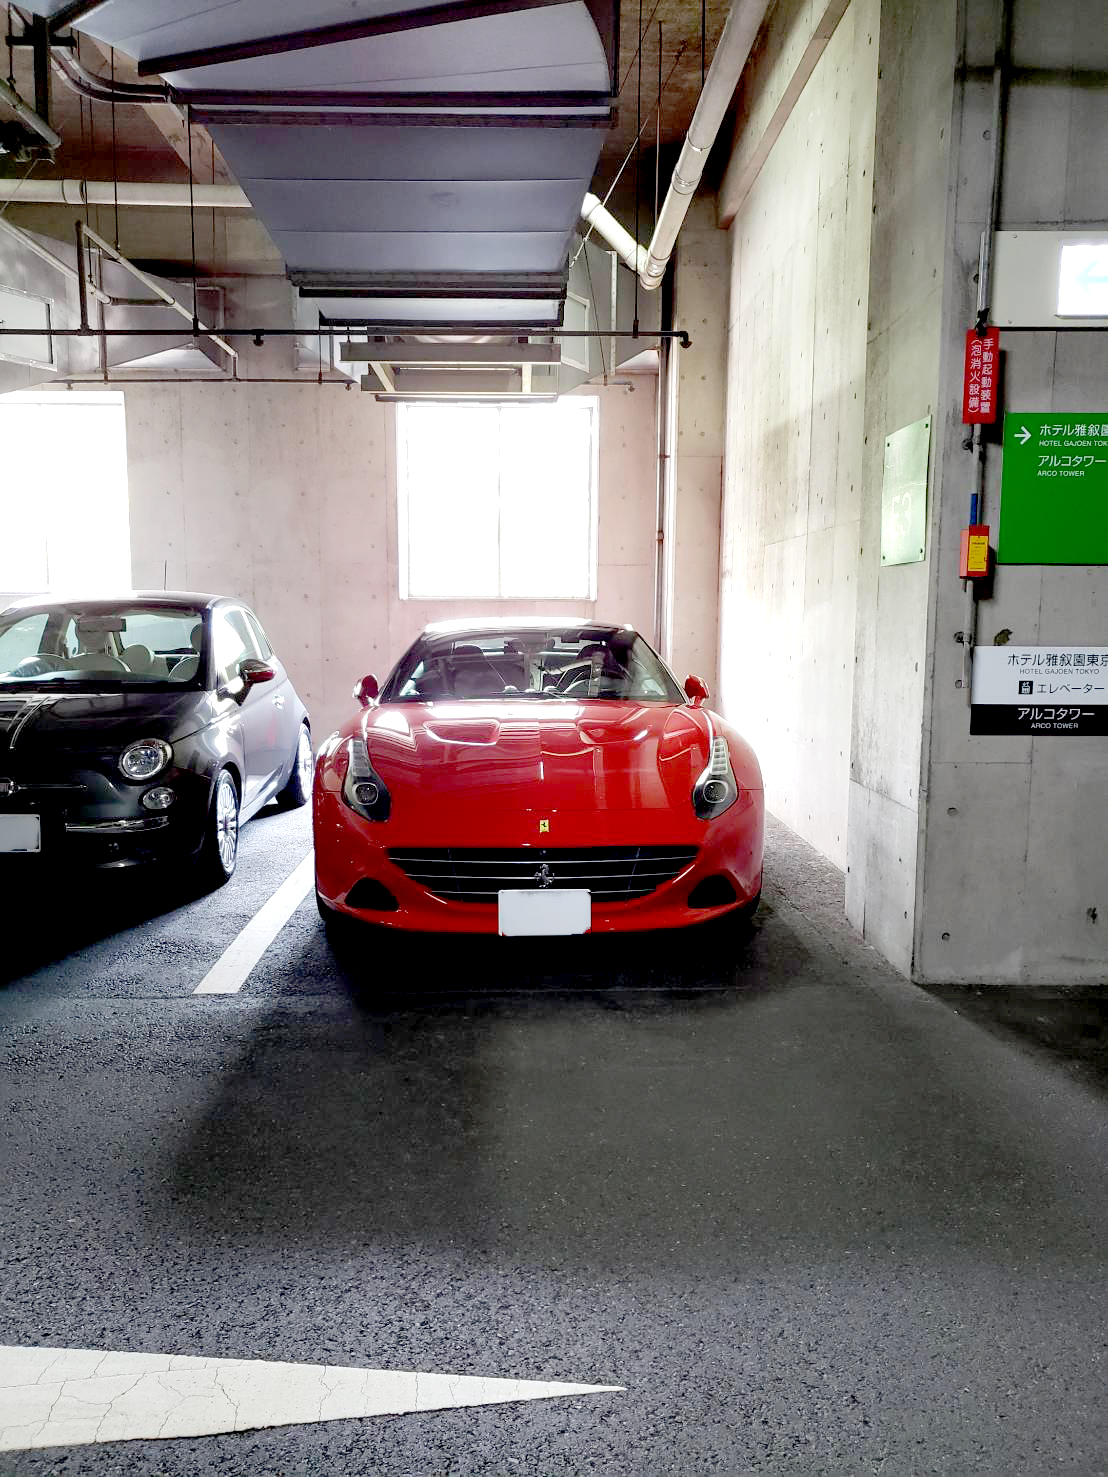 目黒ホテル雅叙園東京にフェラーリの駐車はできる Toyotaのmixed Realty Mr の活用について